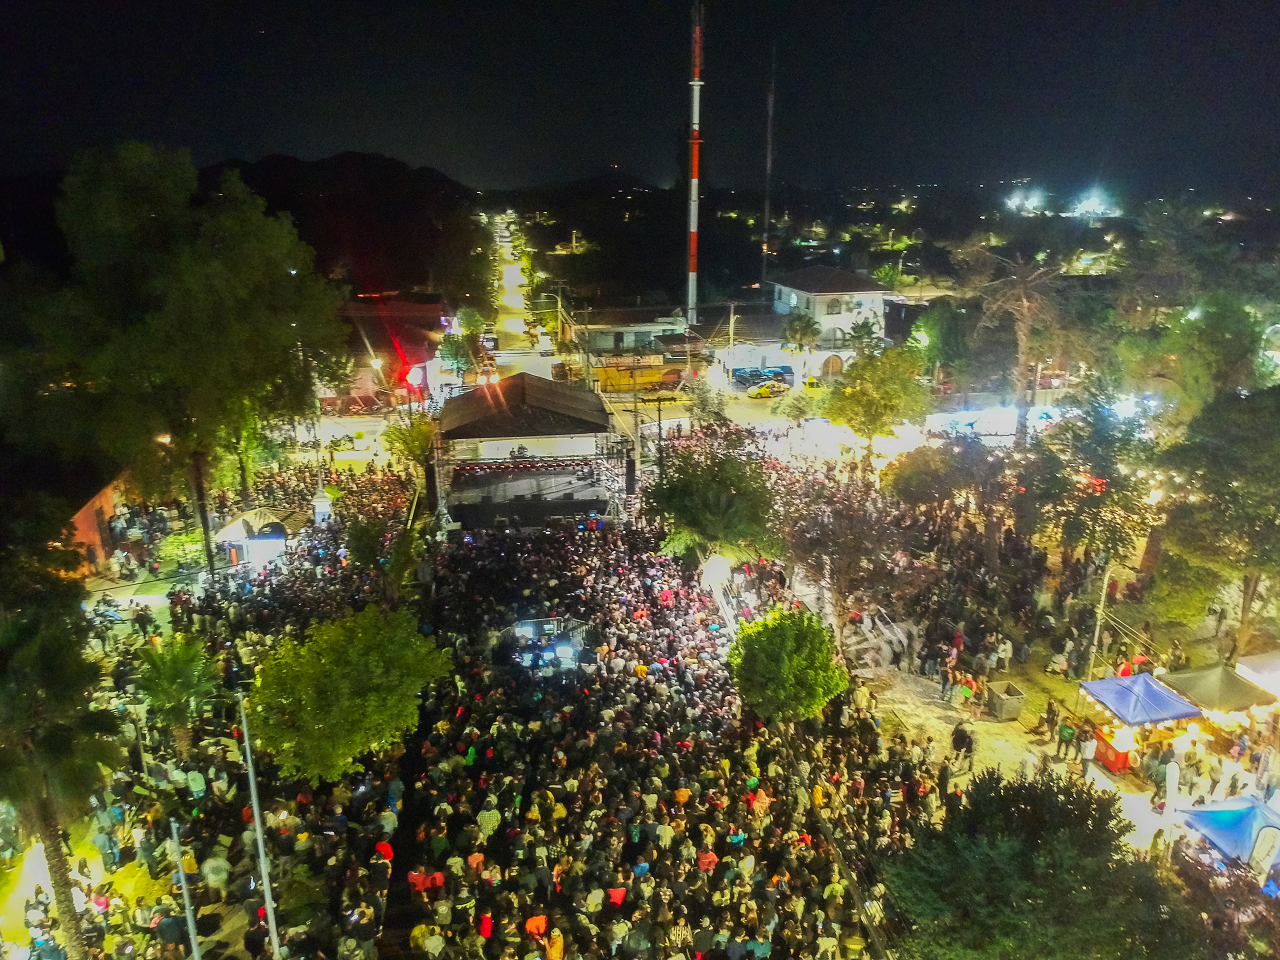 SAN ESTEBAN: Fiesta de la Chaya de San Esteban se posiciona como la mejor de la provincia tras 5 exitosas jornadas